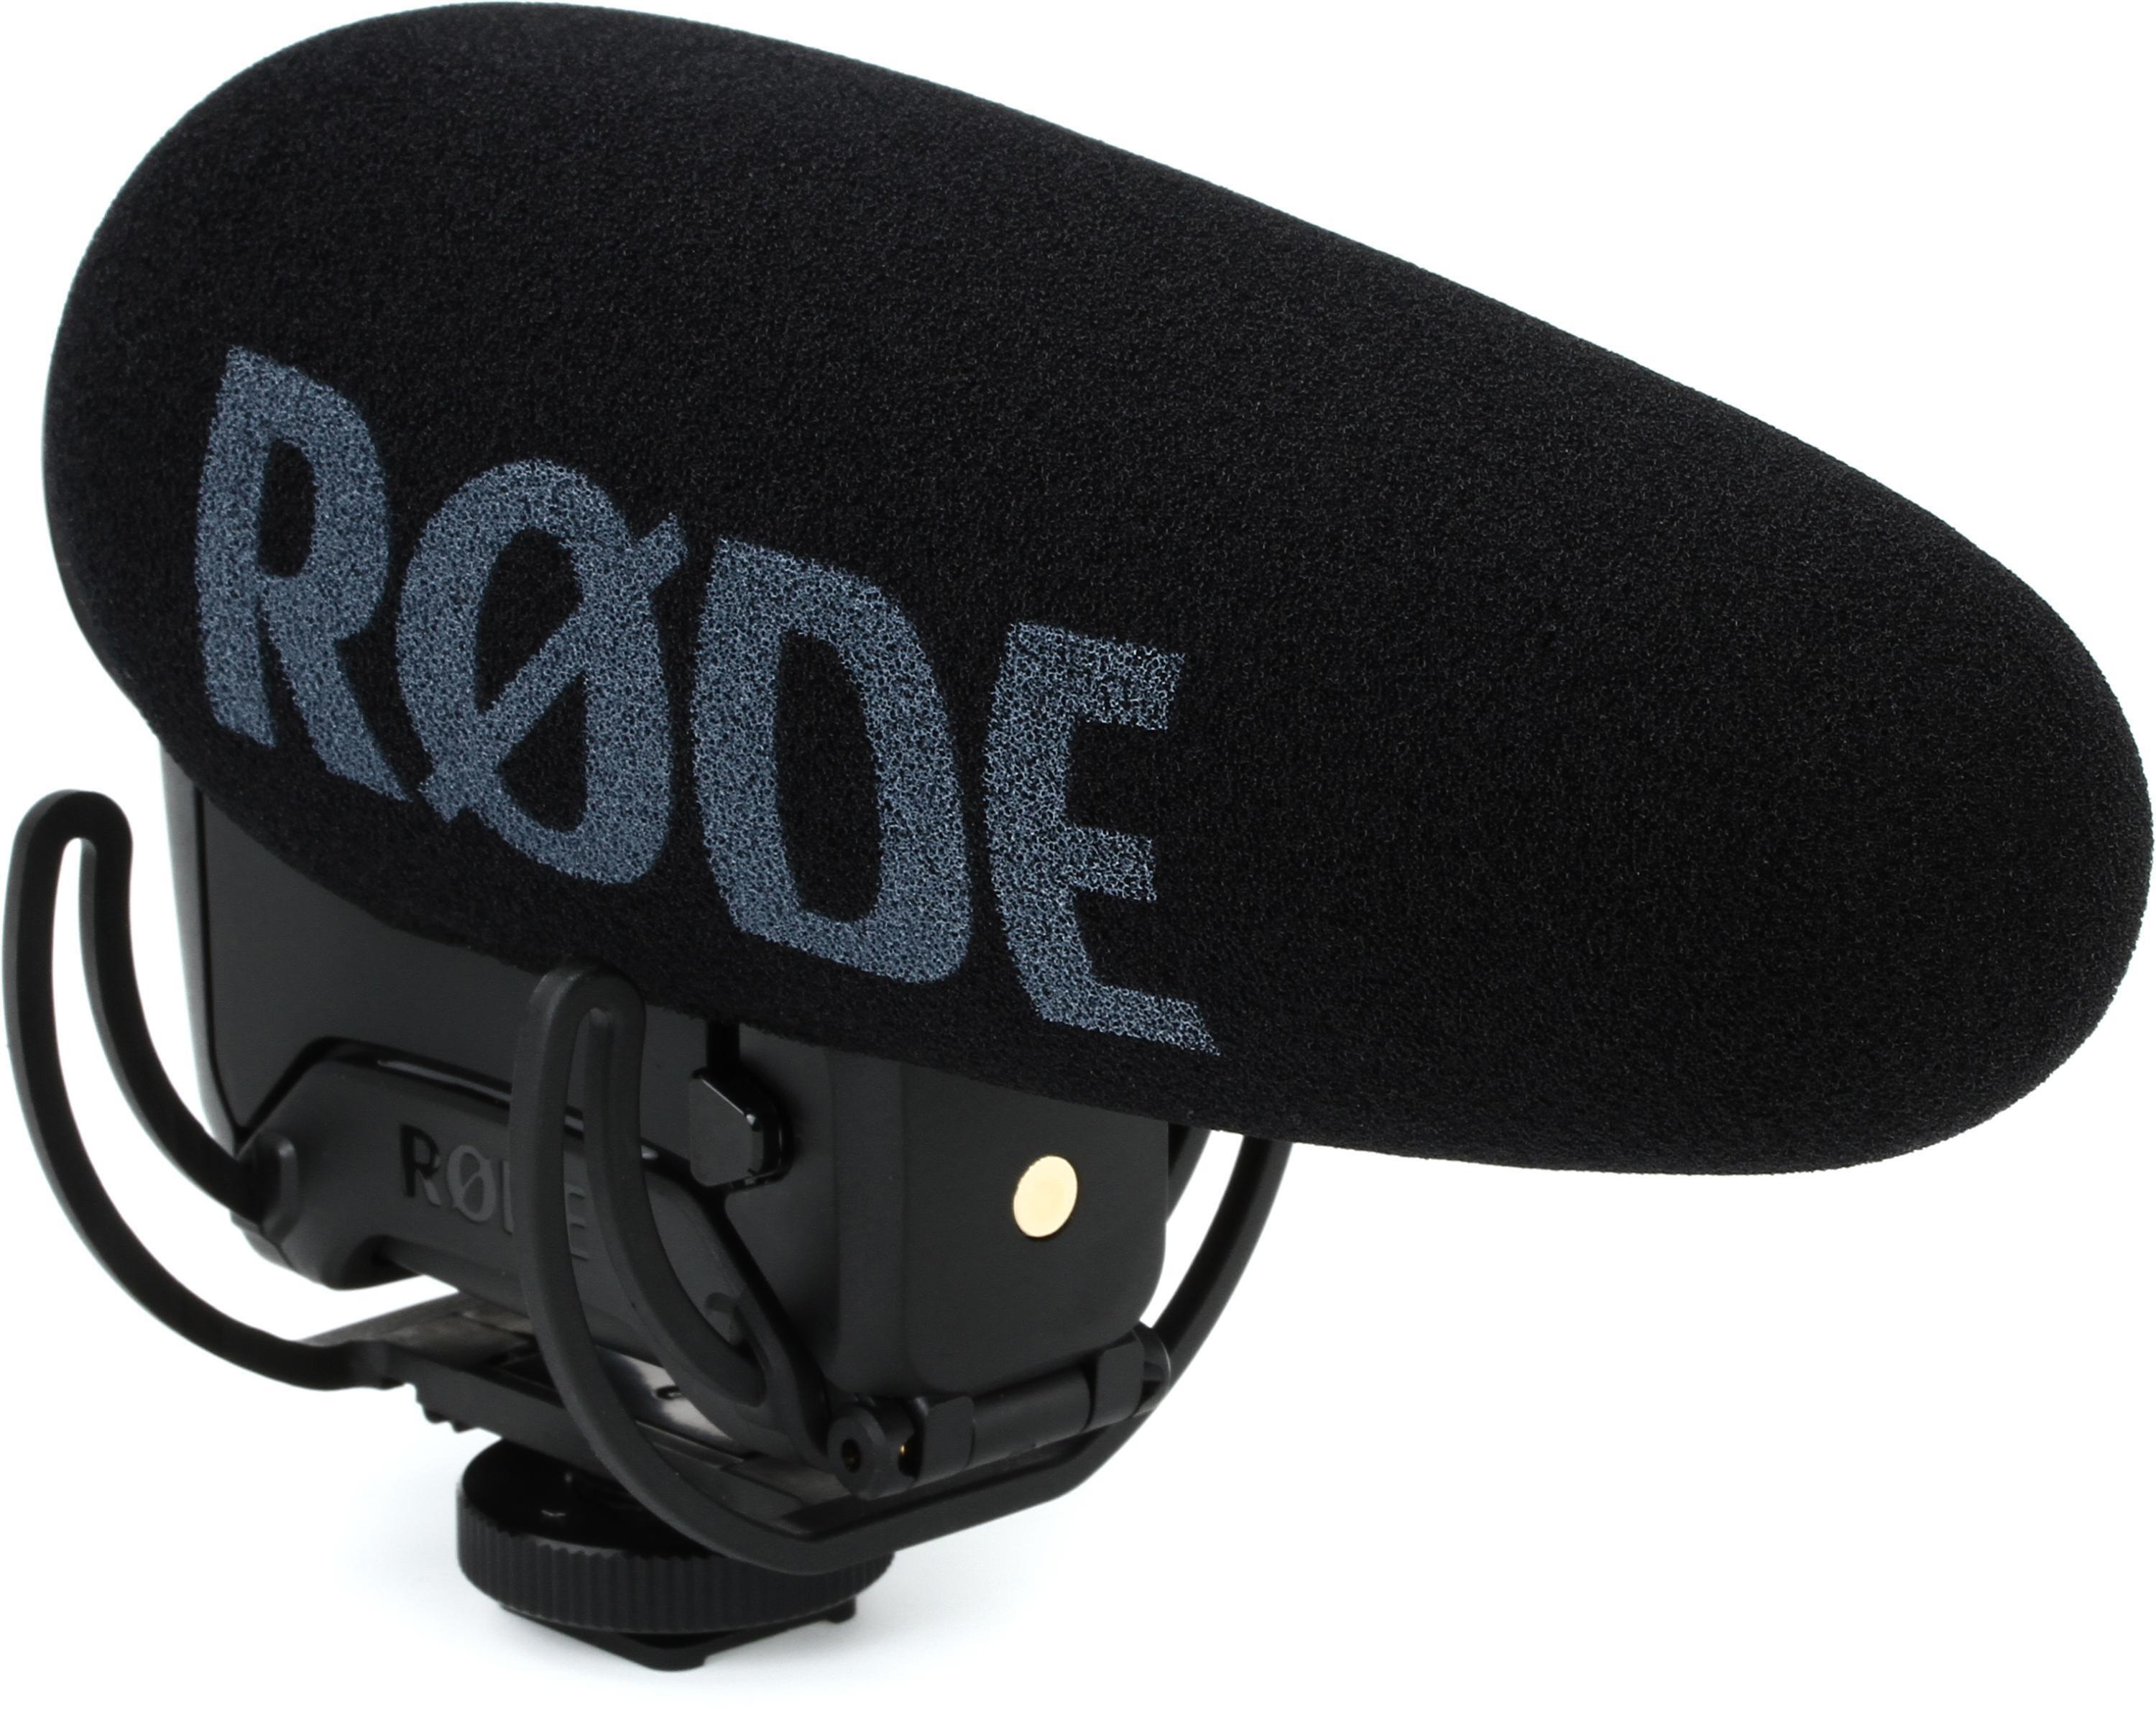 Rode VideoMic Pro+ Camera-mount Shotgun Microphone